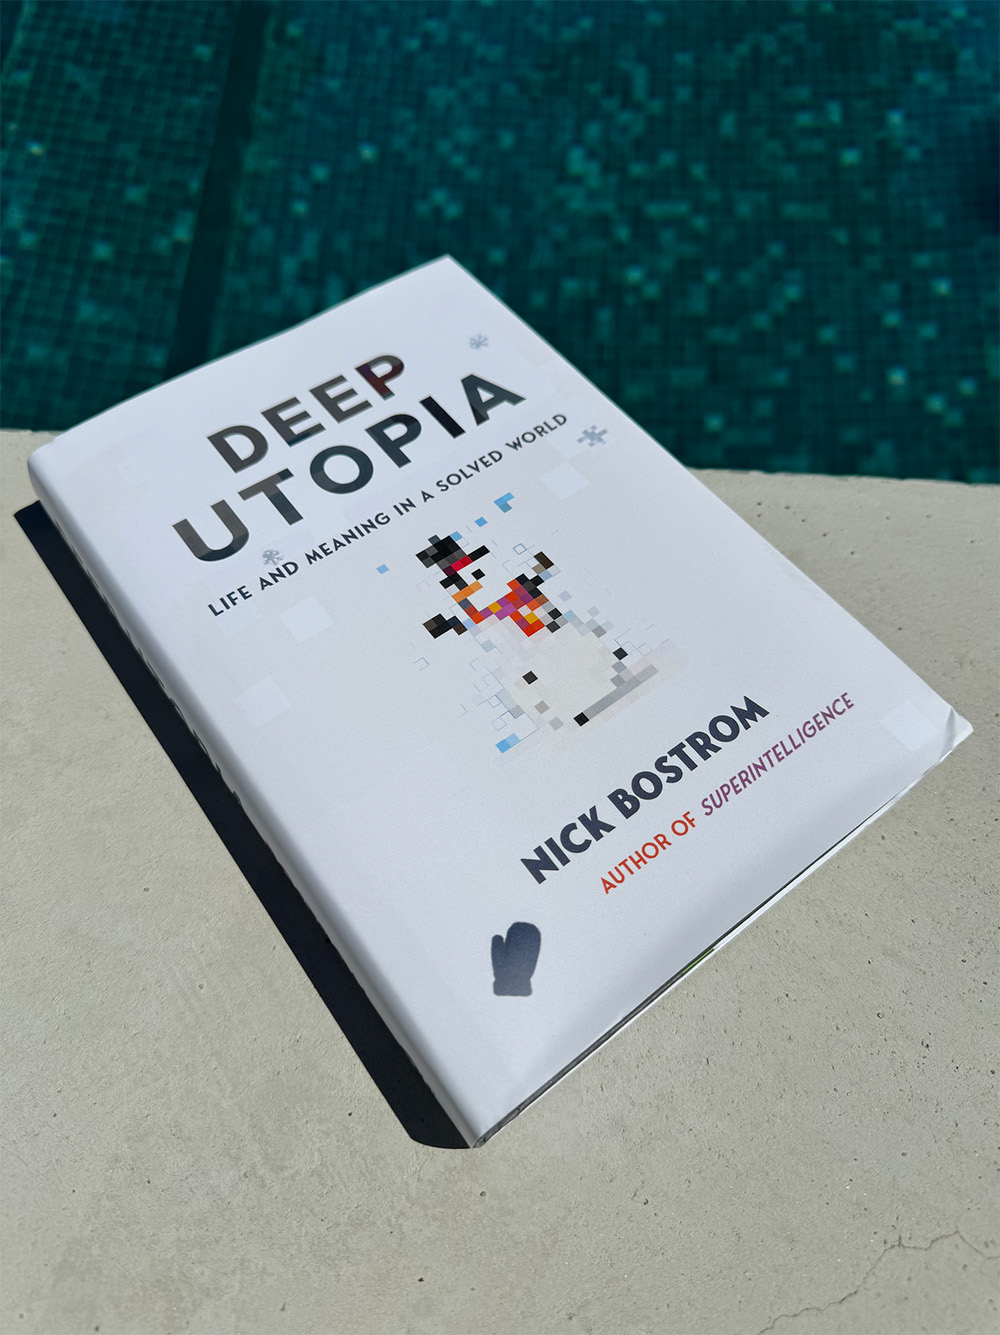 A copy of Deep Utopia outside near a pool